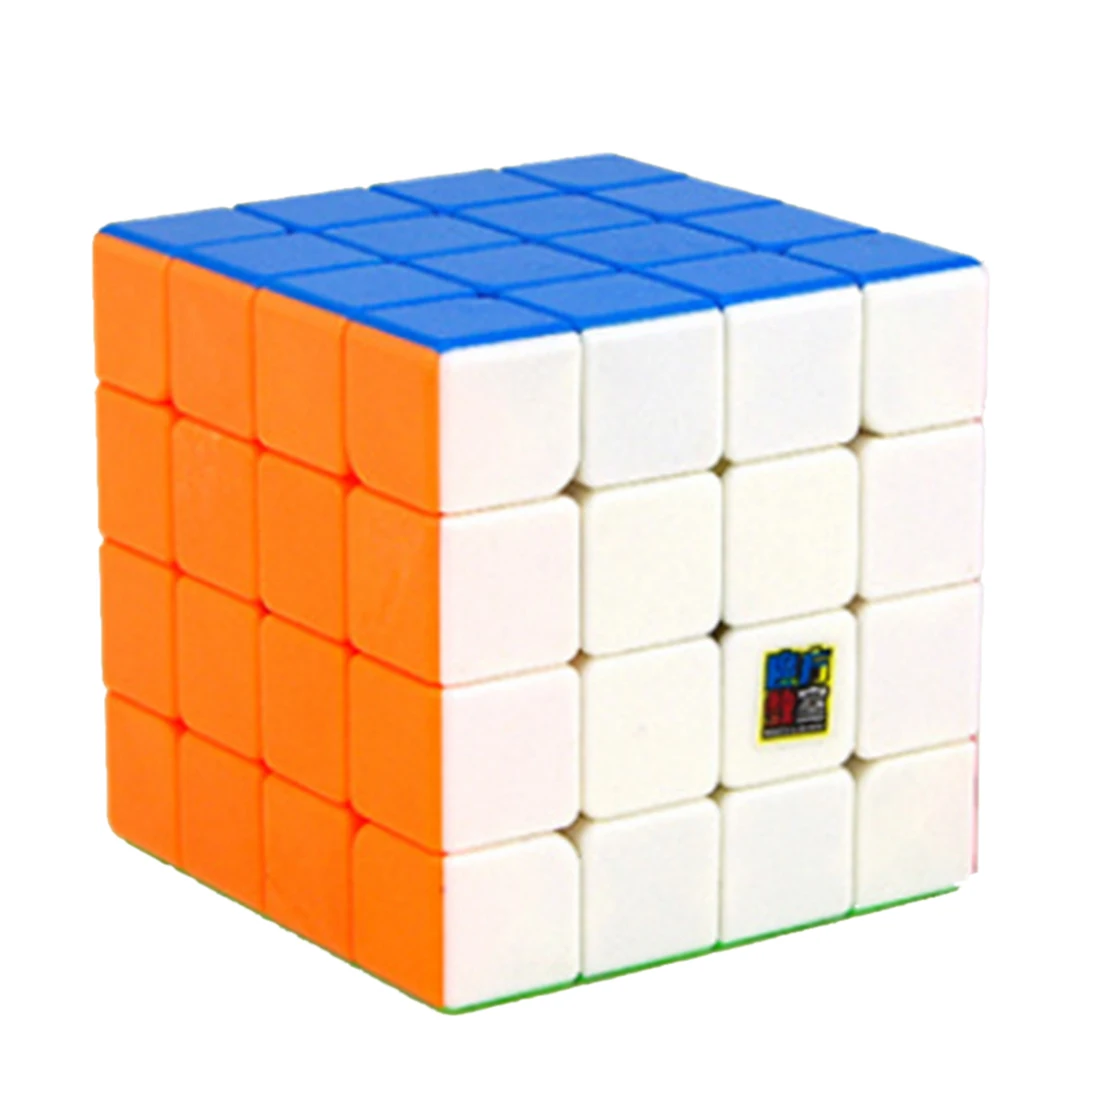 MoYu MF4 Cubing класс Speedcubing 4x4x4 волшебный куб пазл игрушки для начинающих - Цвет: Многоцветный